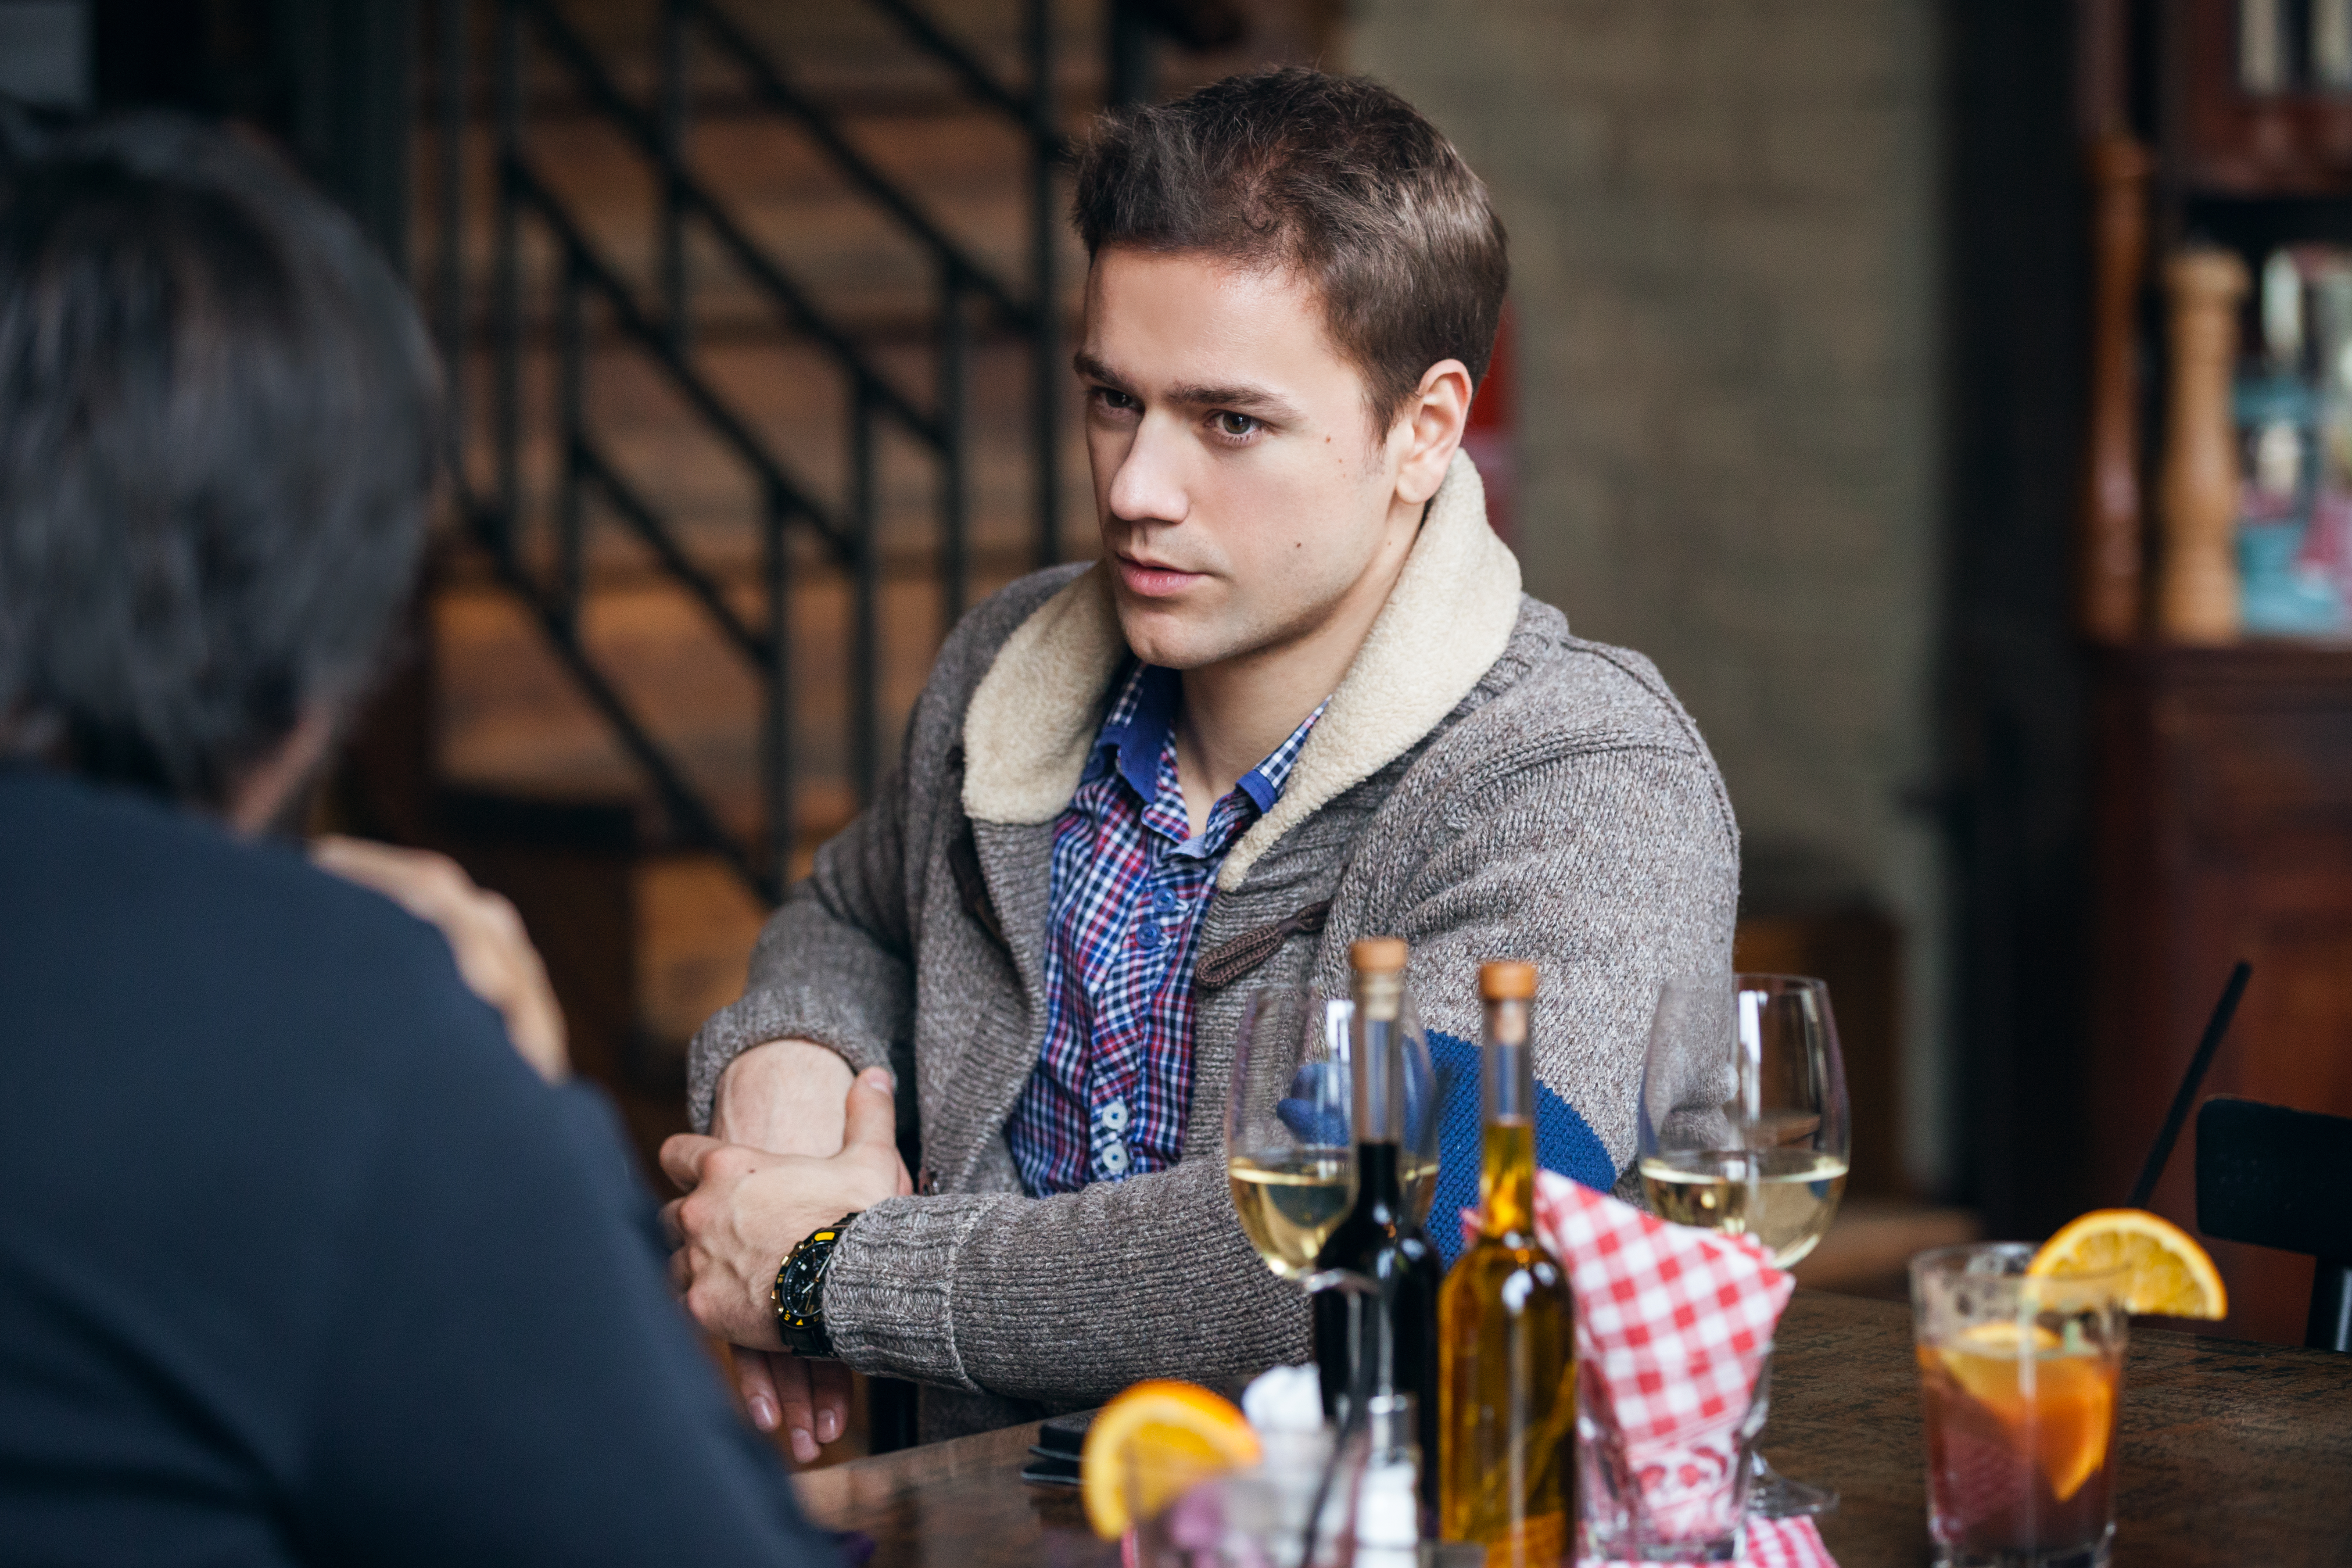 Homme discutant dans un restaurant | Source : Getty Images